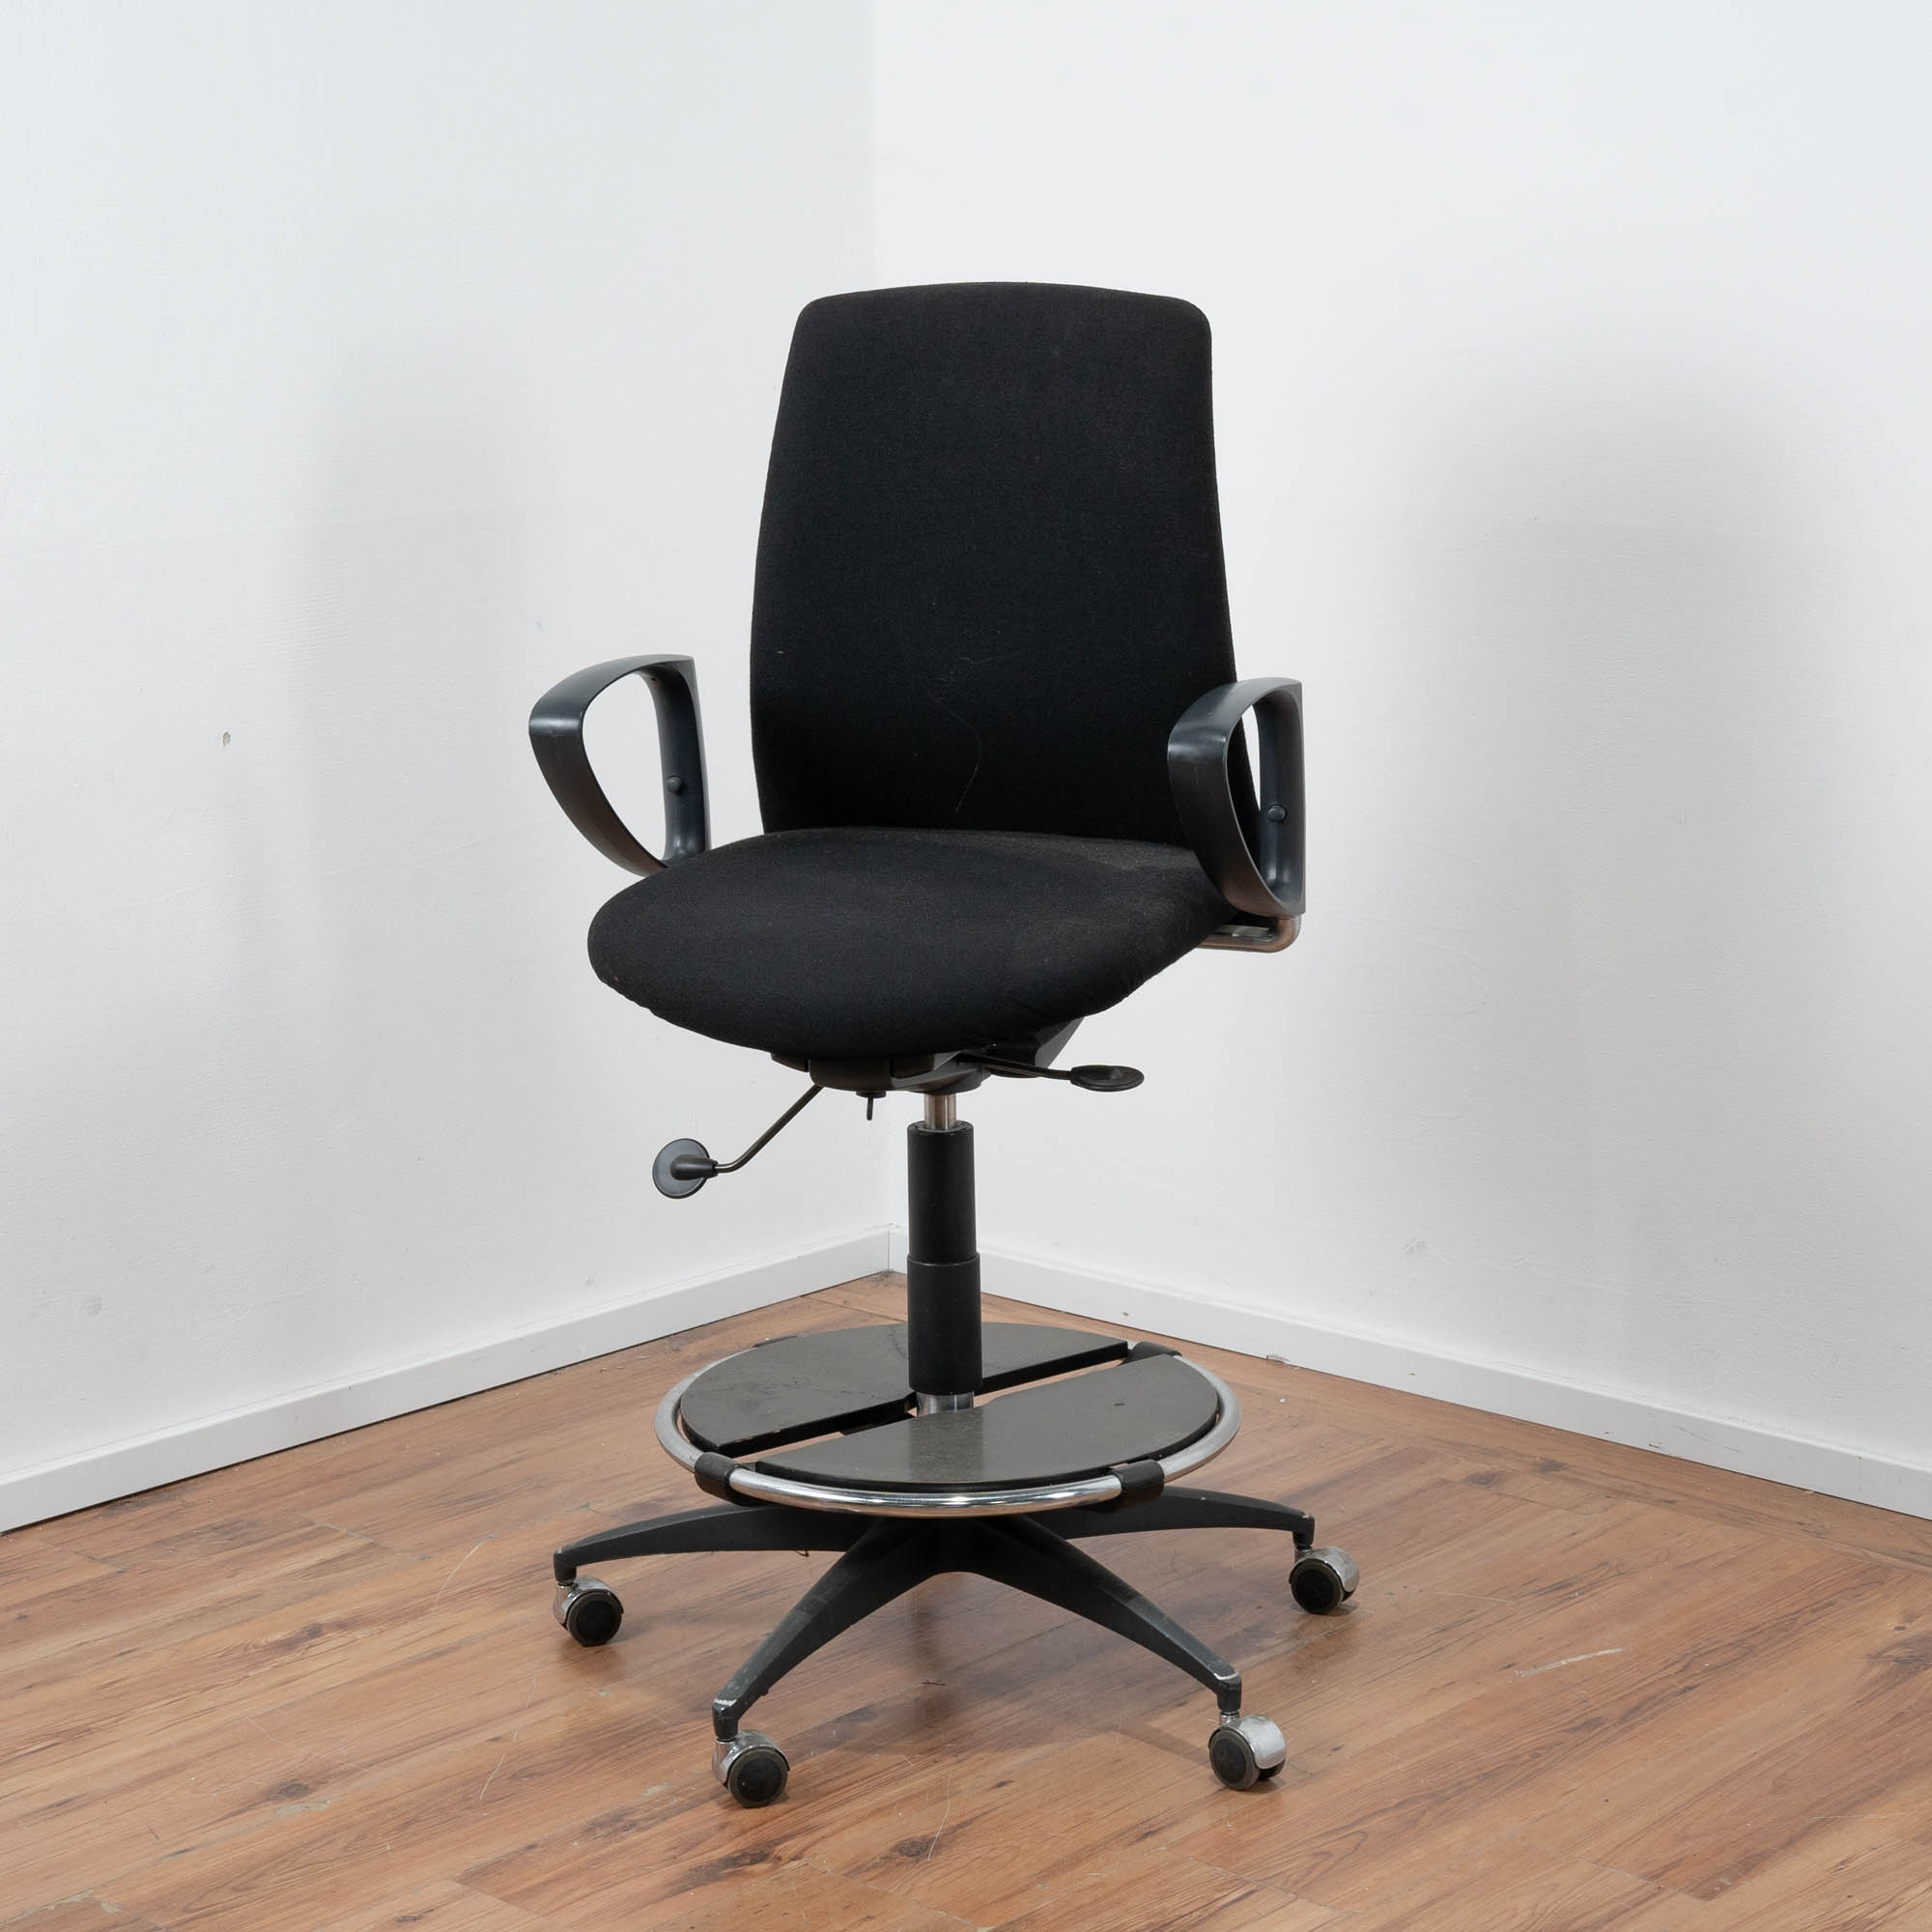 Counter-Stuhl - Thekenstuhl Stoff schwarz - erhöhte Sitzposition - mit Armlehnen - auf Rollen